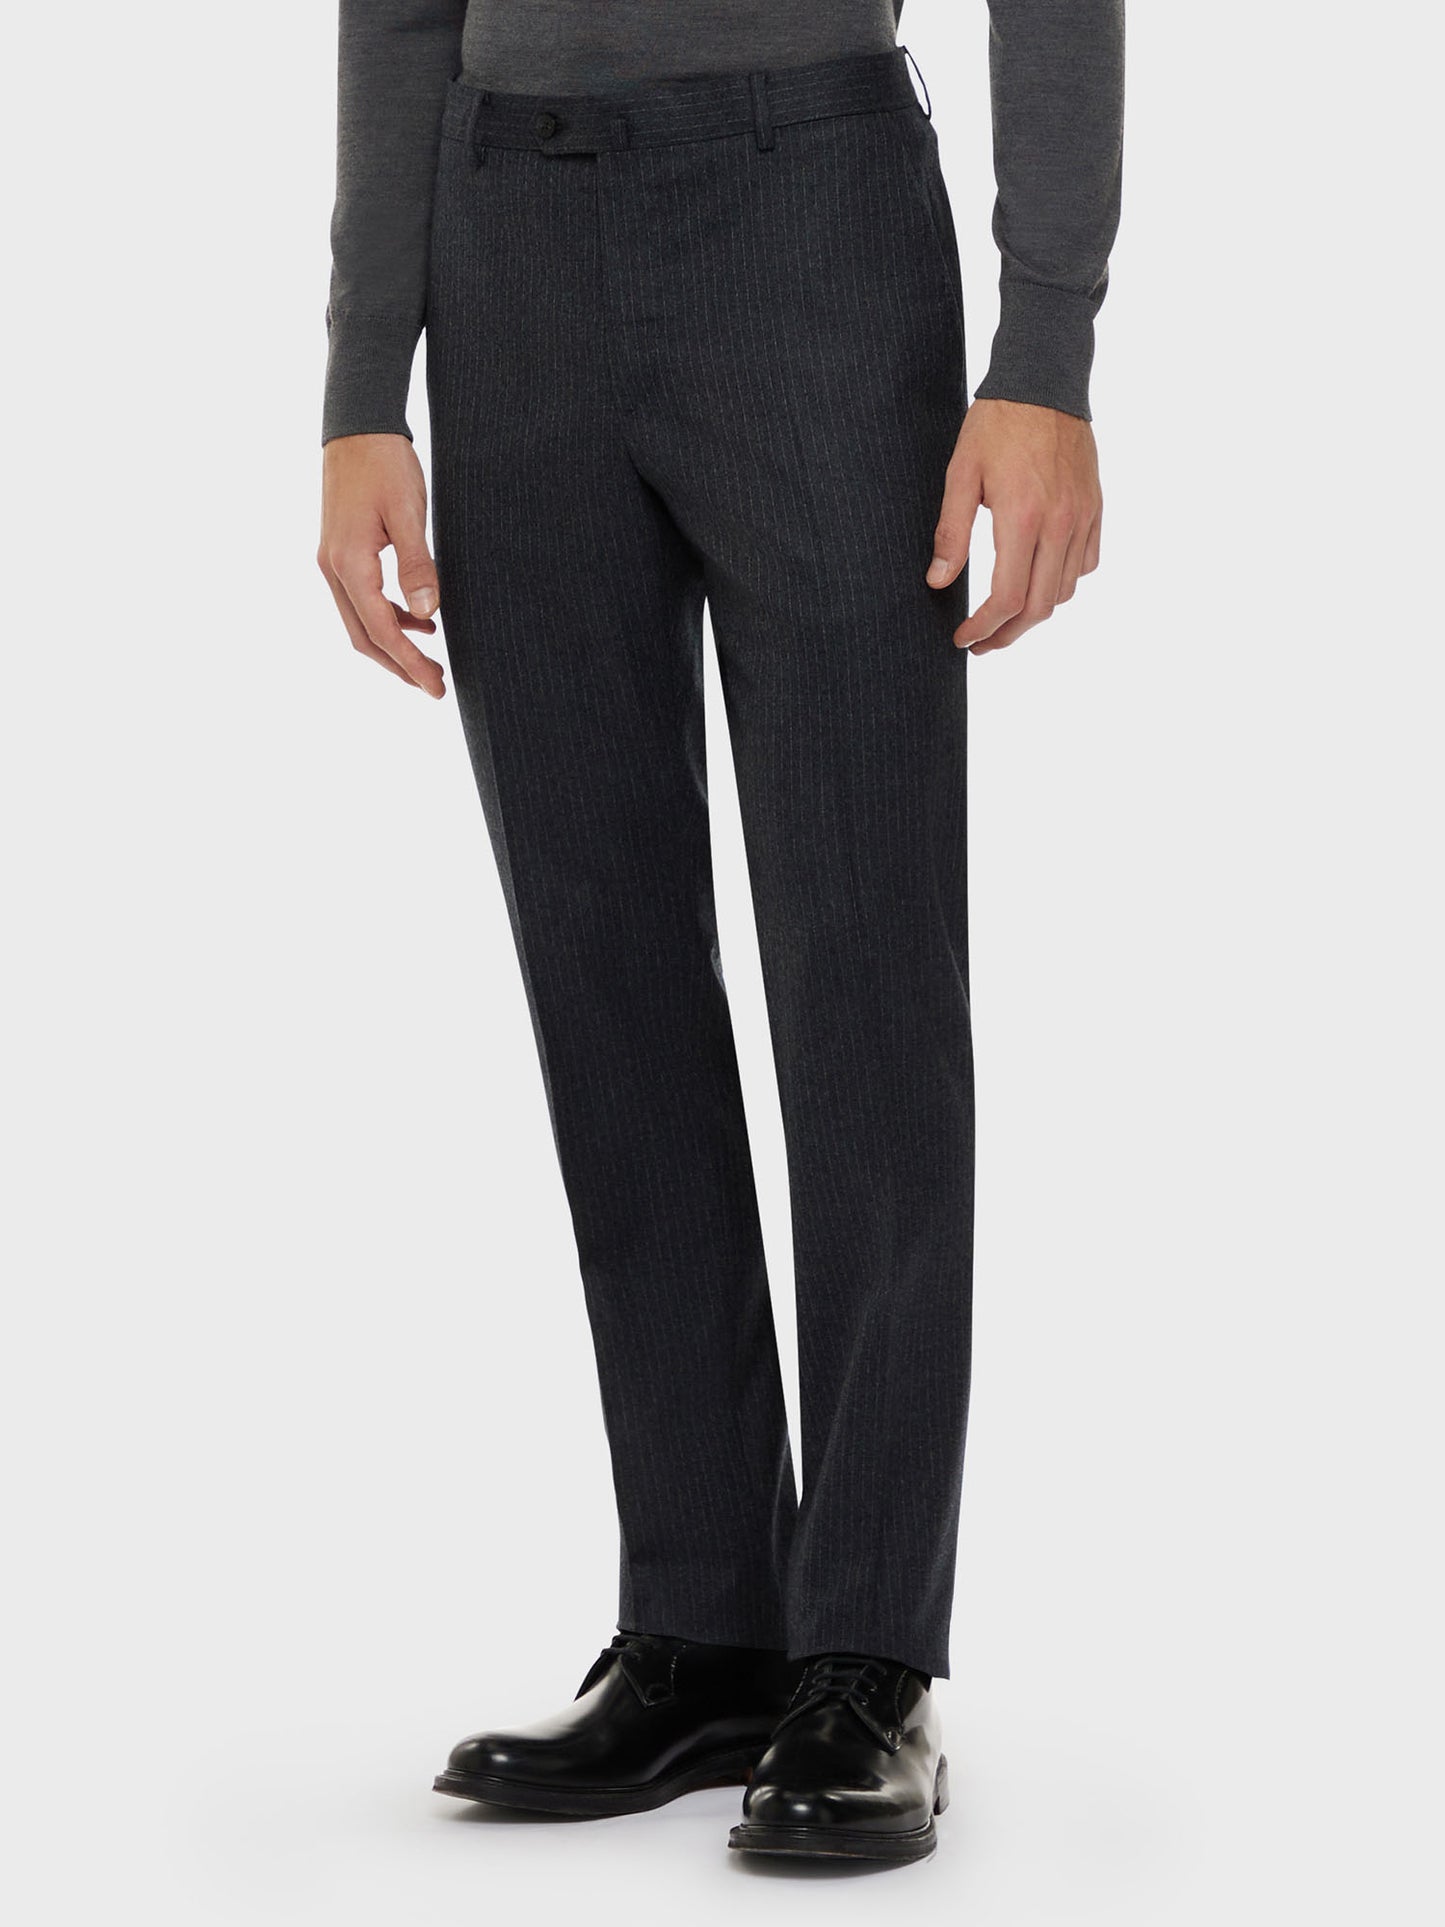 Caruso Menswear Abbigliamento Uomo Abito norma monopetto in flanella di lana grigio drop 7R dettaglio pantalone